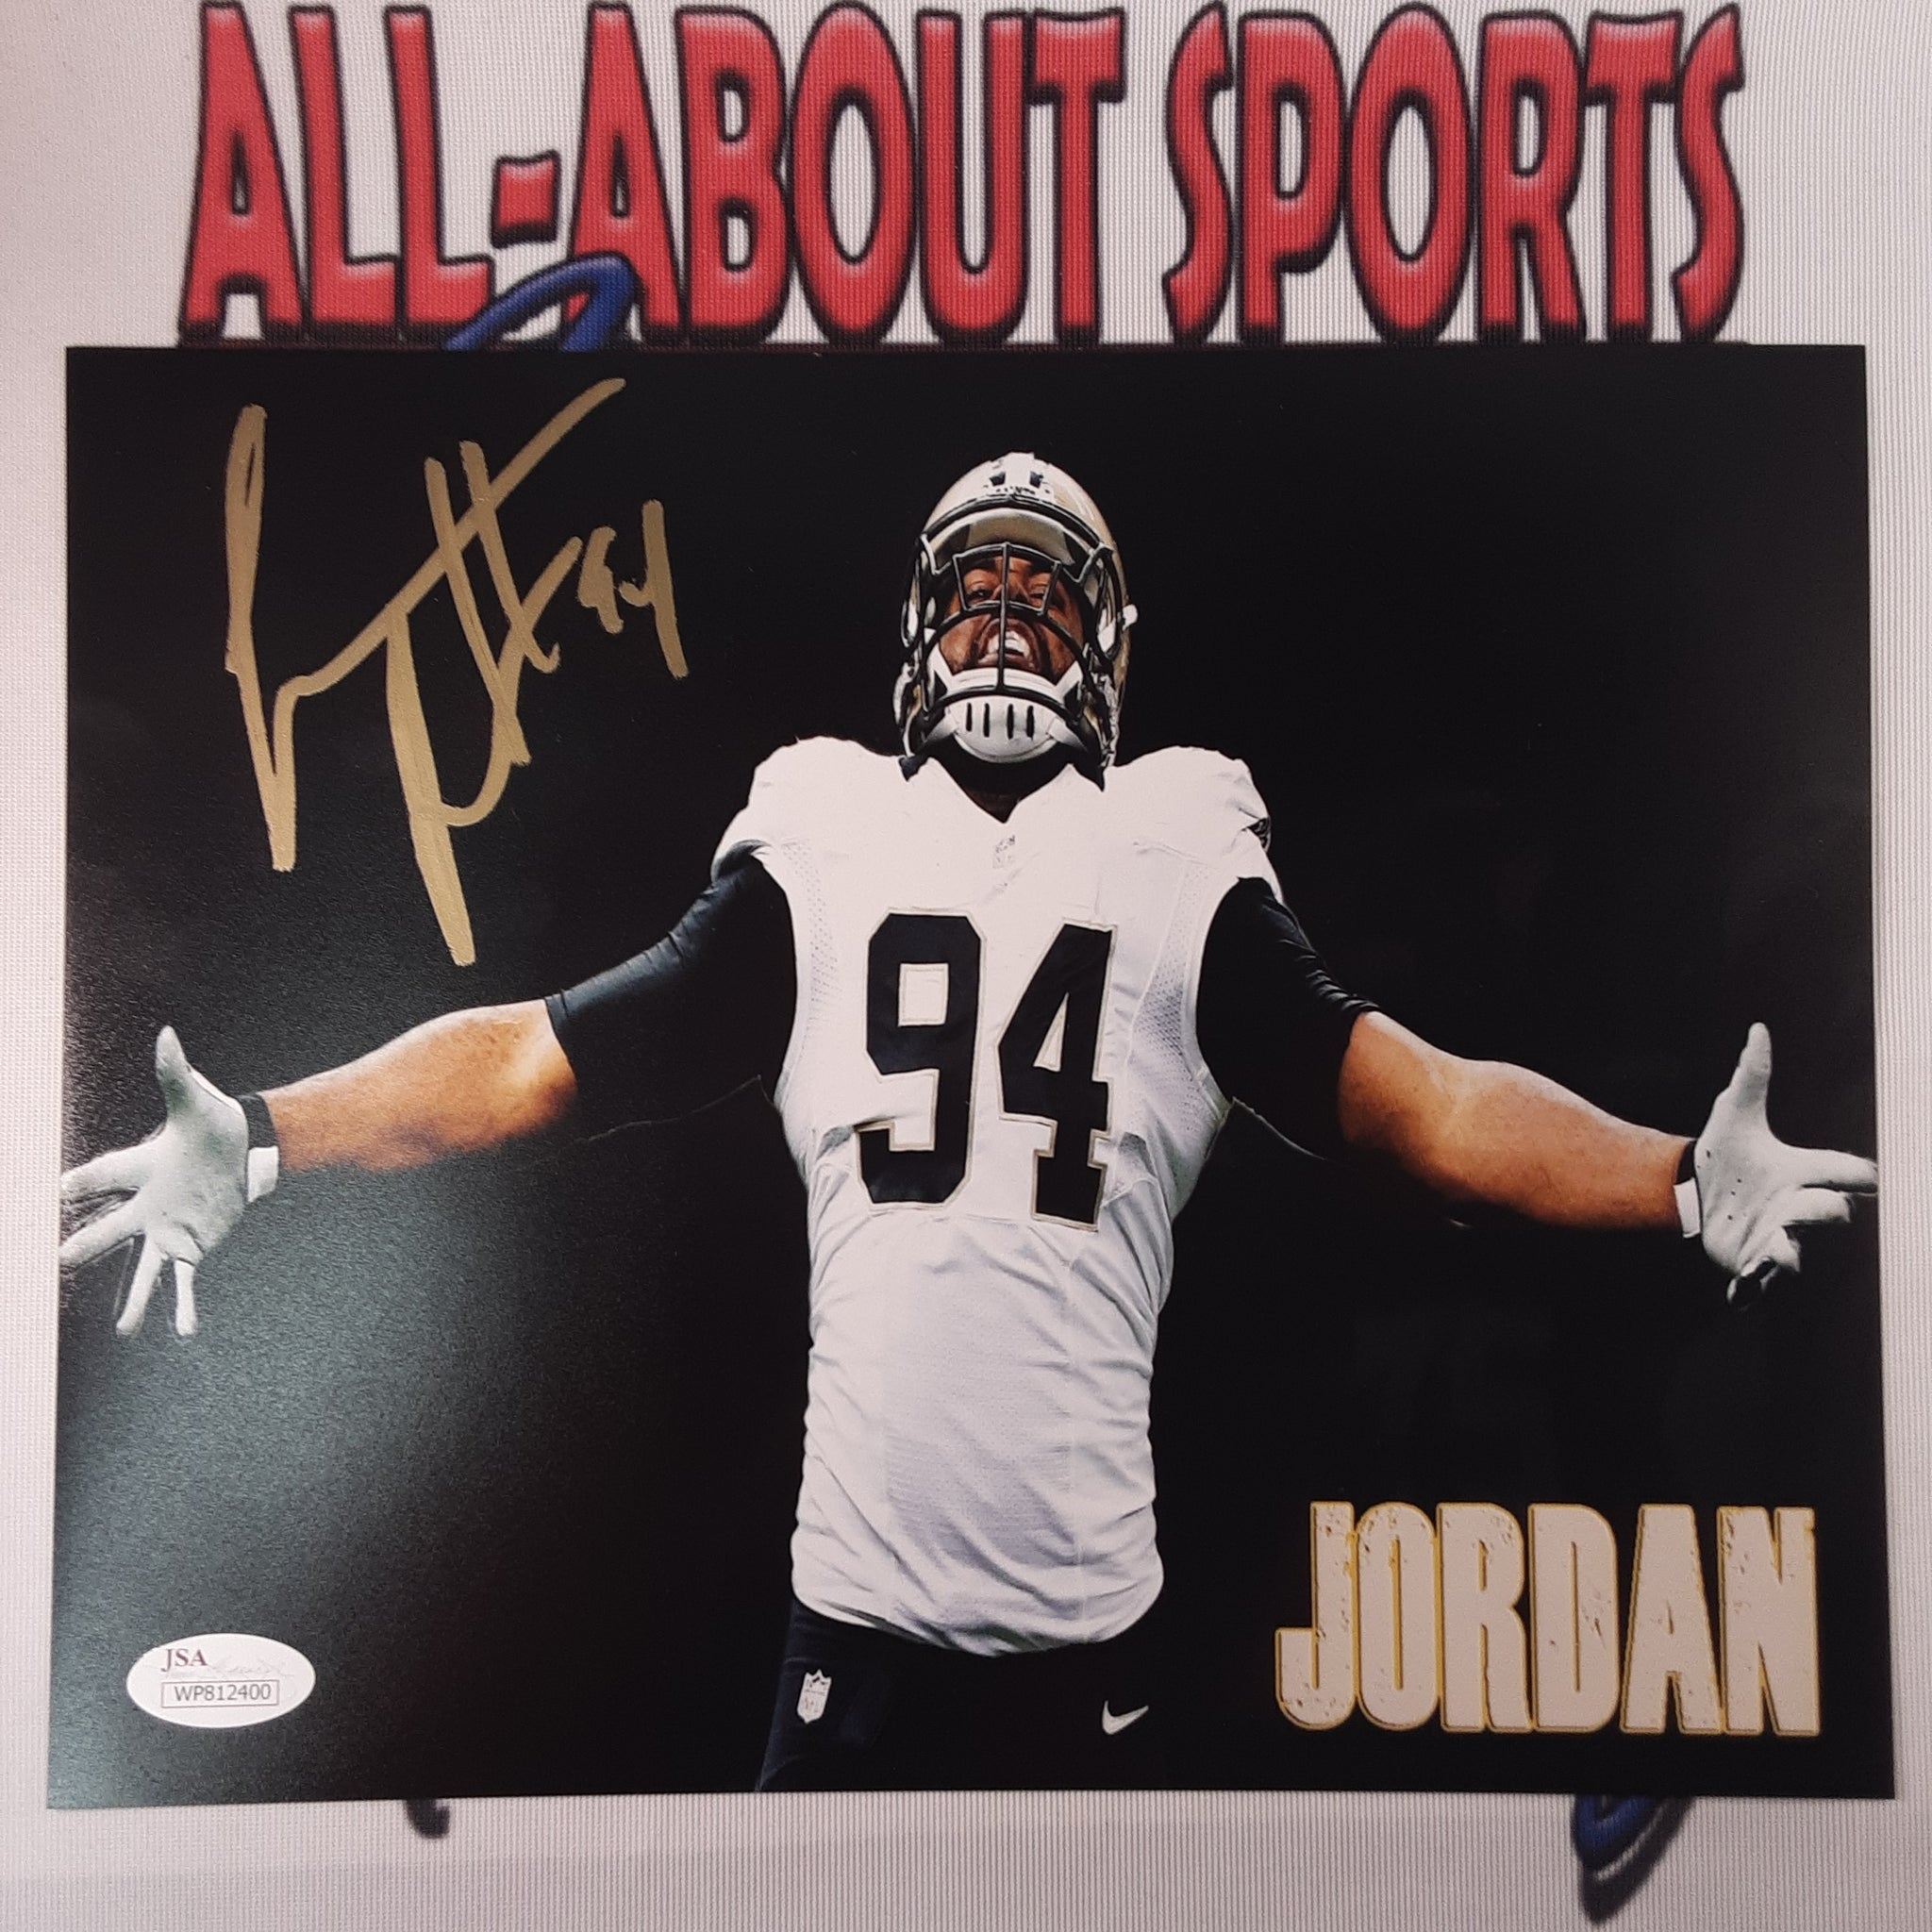 Cameron Jordan Authentic Signed 8x10 Photo Autographed JSA.